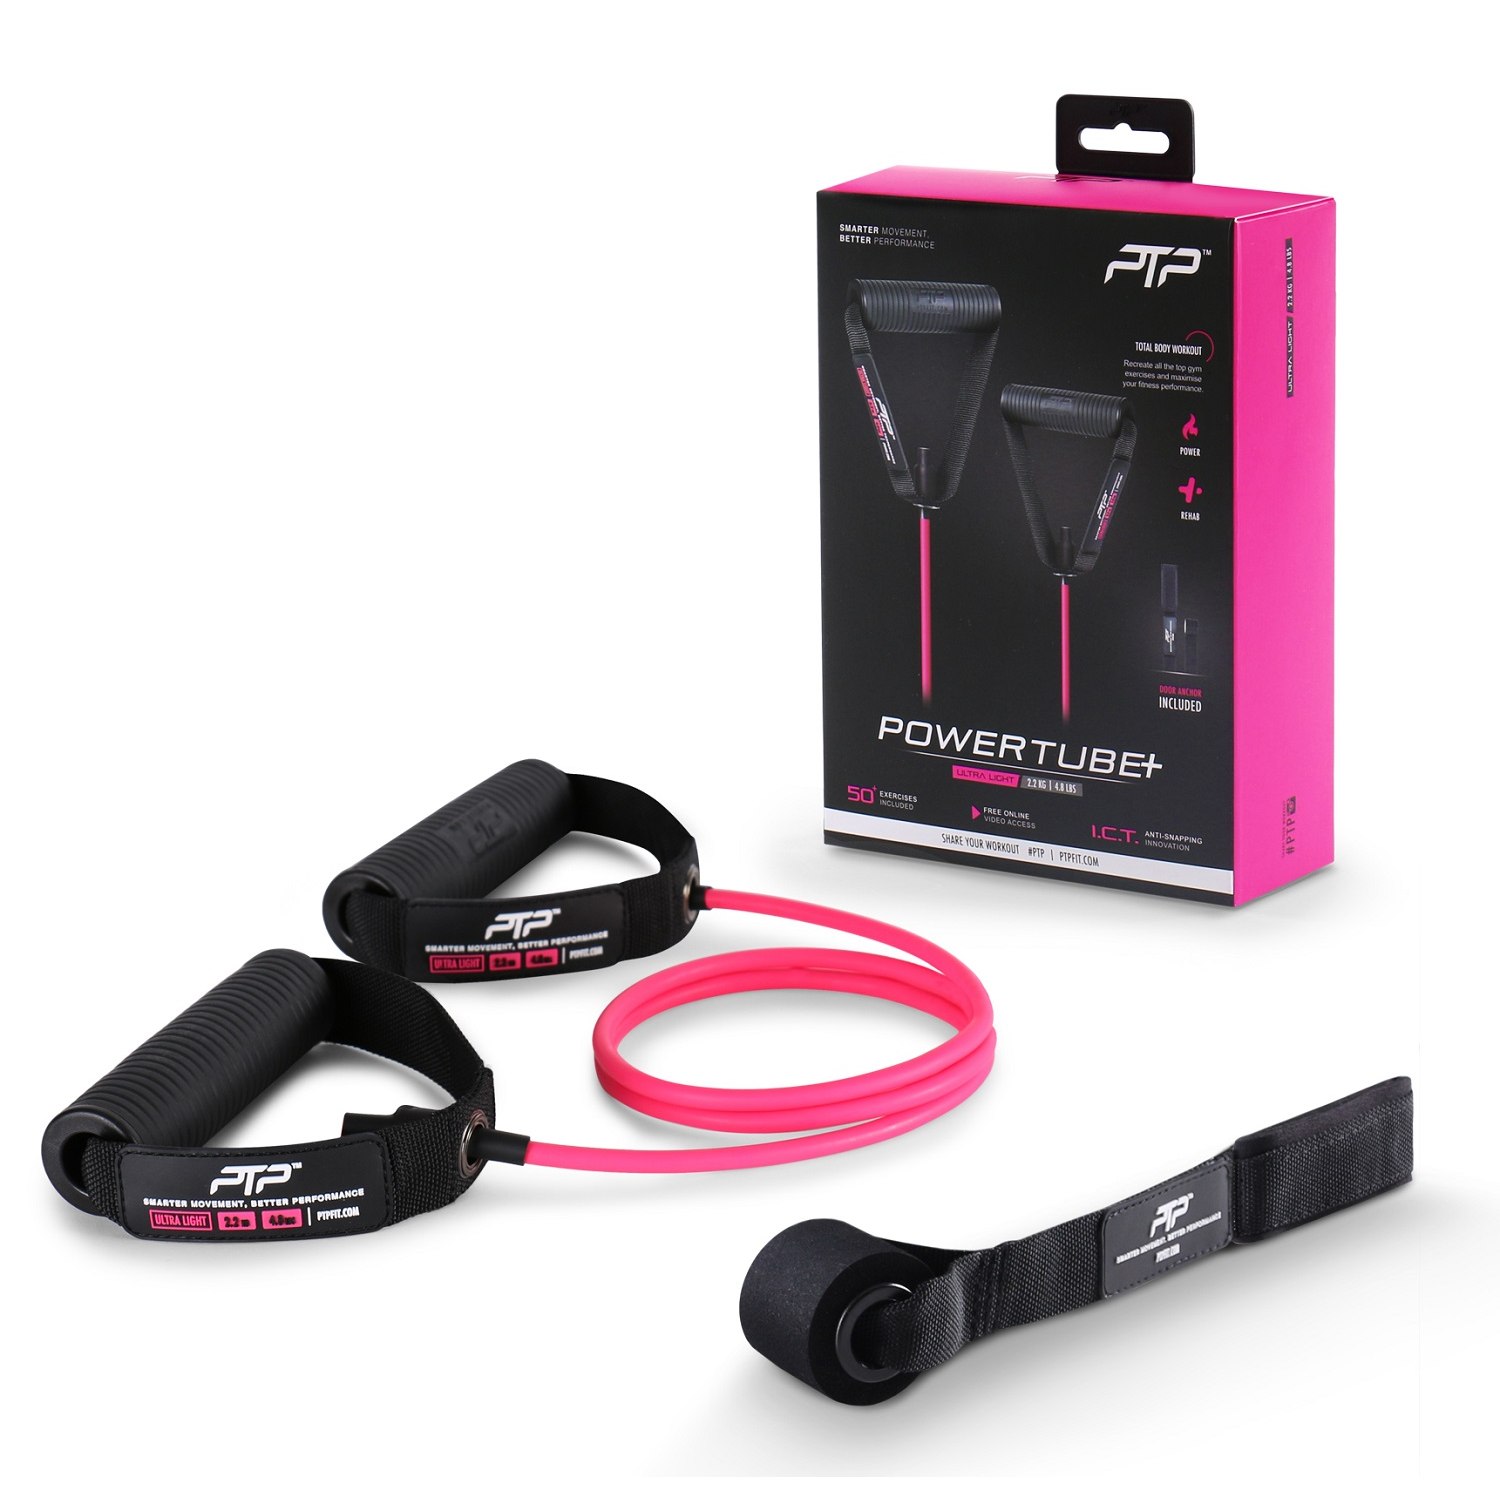 Produktbild von PTP PowerTube+ Ultra Light Widerstandsband - pink